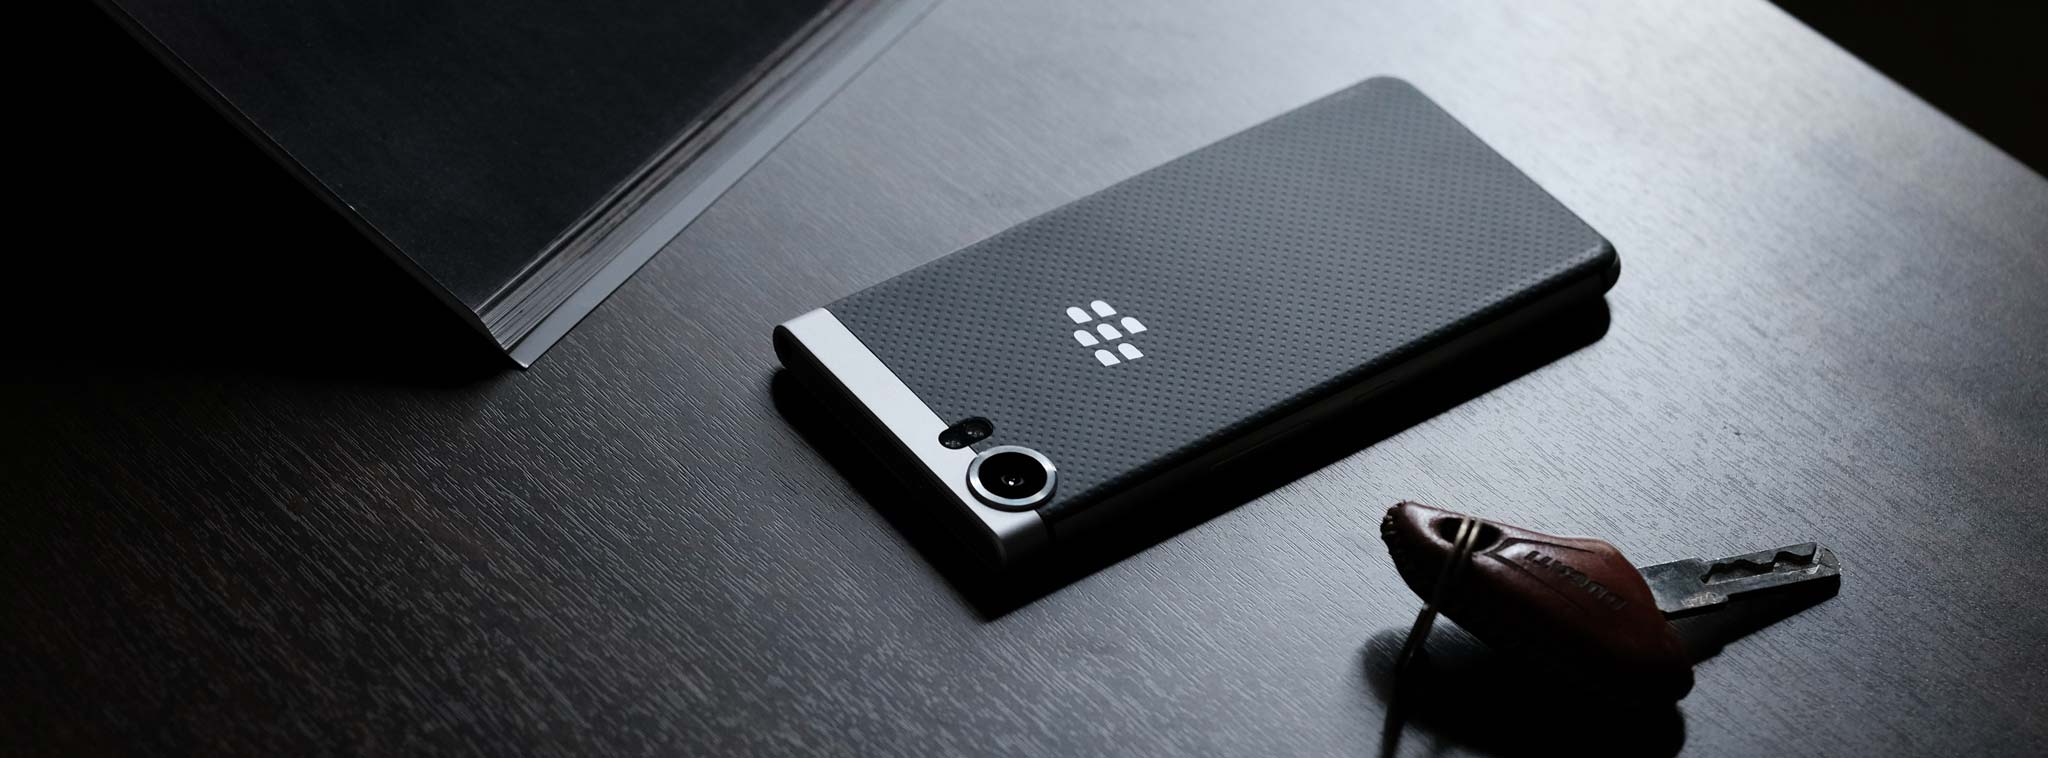 BlackBerry đã rút hoàn toàn khỏi mảng smartphone, chuyển sang giải pháp doanh nghiệp